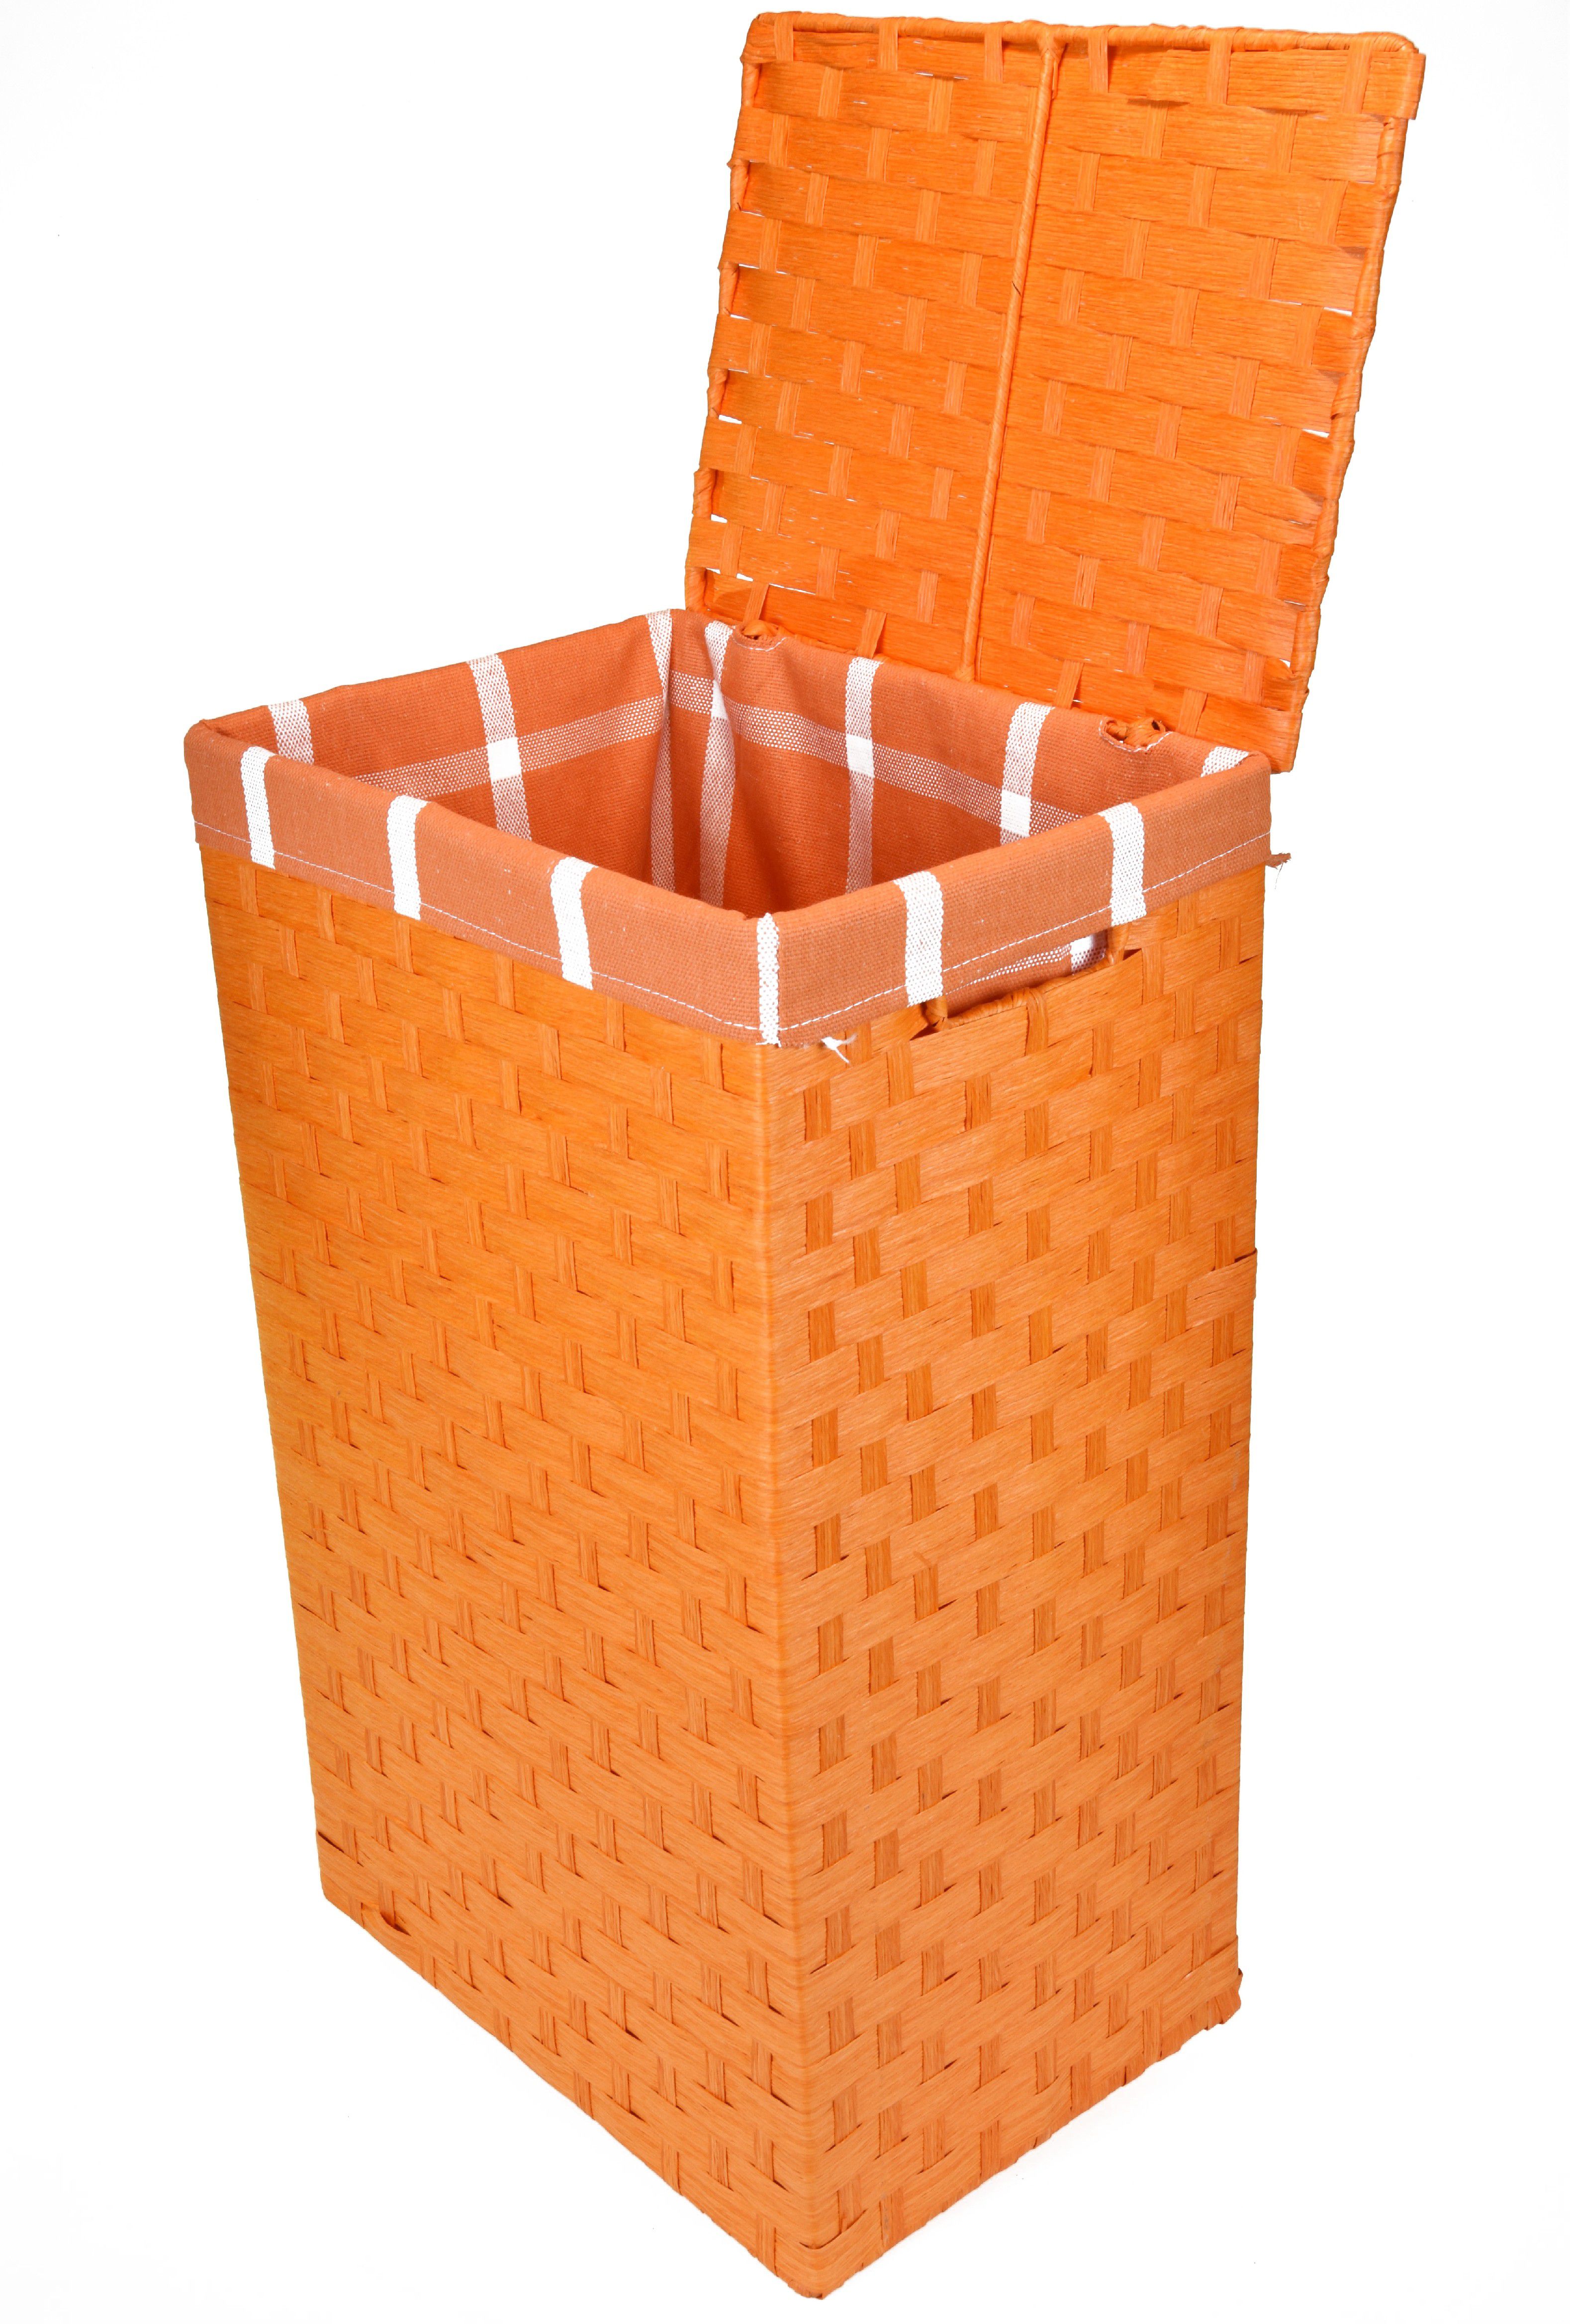 Vingo Koš na prádlo oranžový Rozměry (cm): 40x30, v. 61 - Vingo